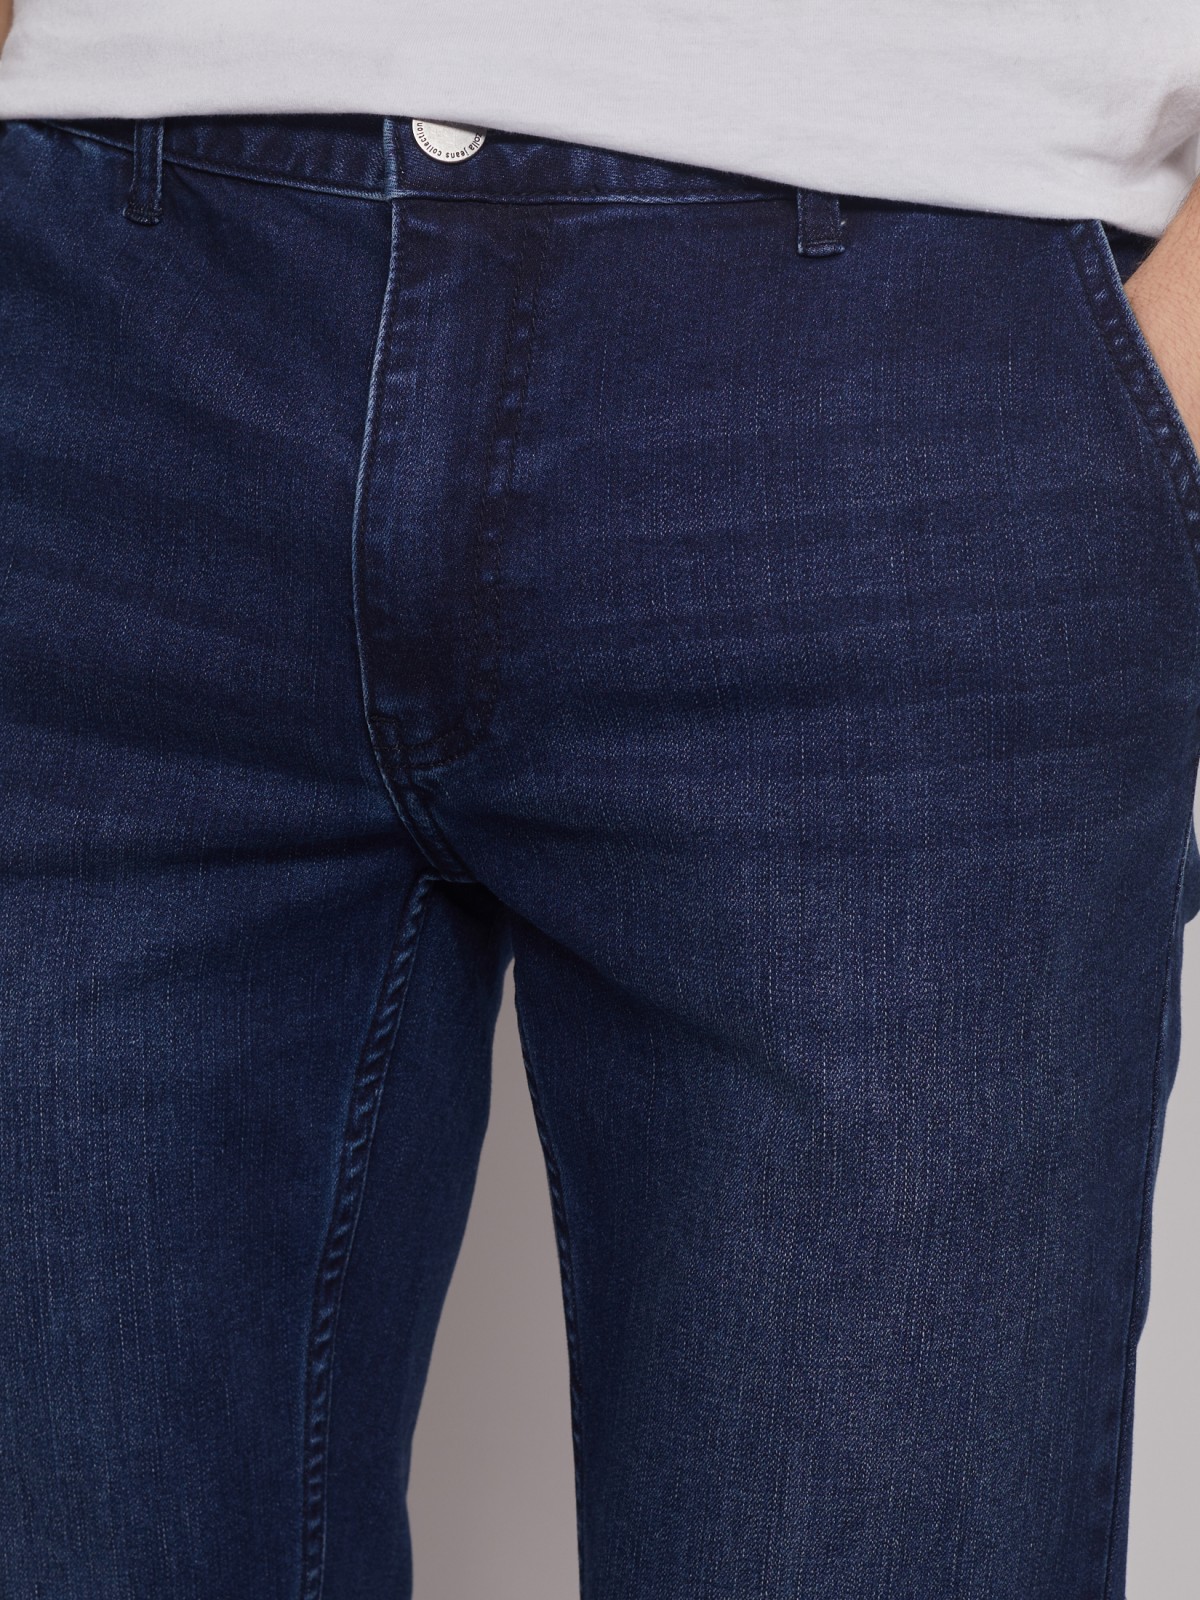 Брюки джинсовые zolla 01312711R061, цвет синий, размер 30 - фото 4